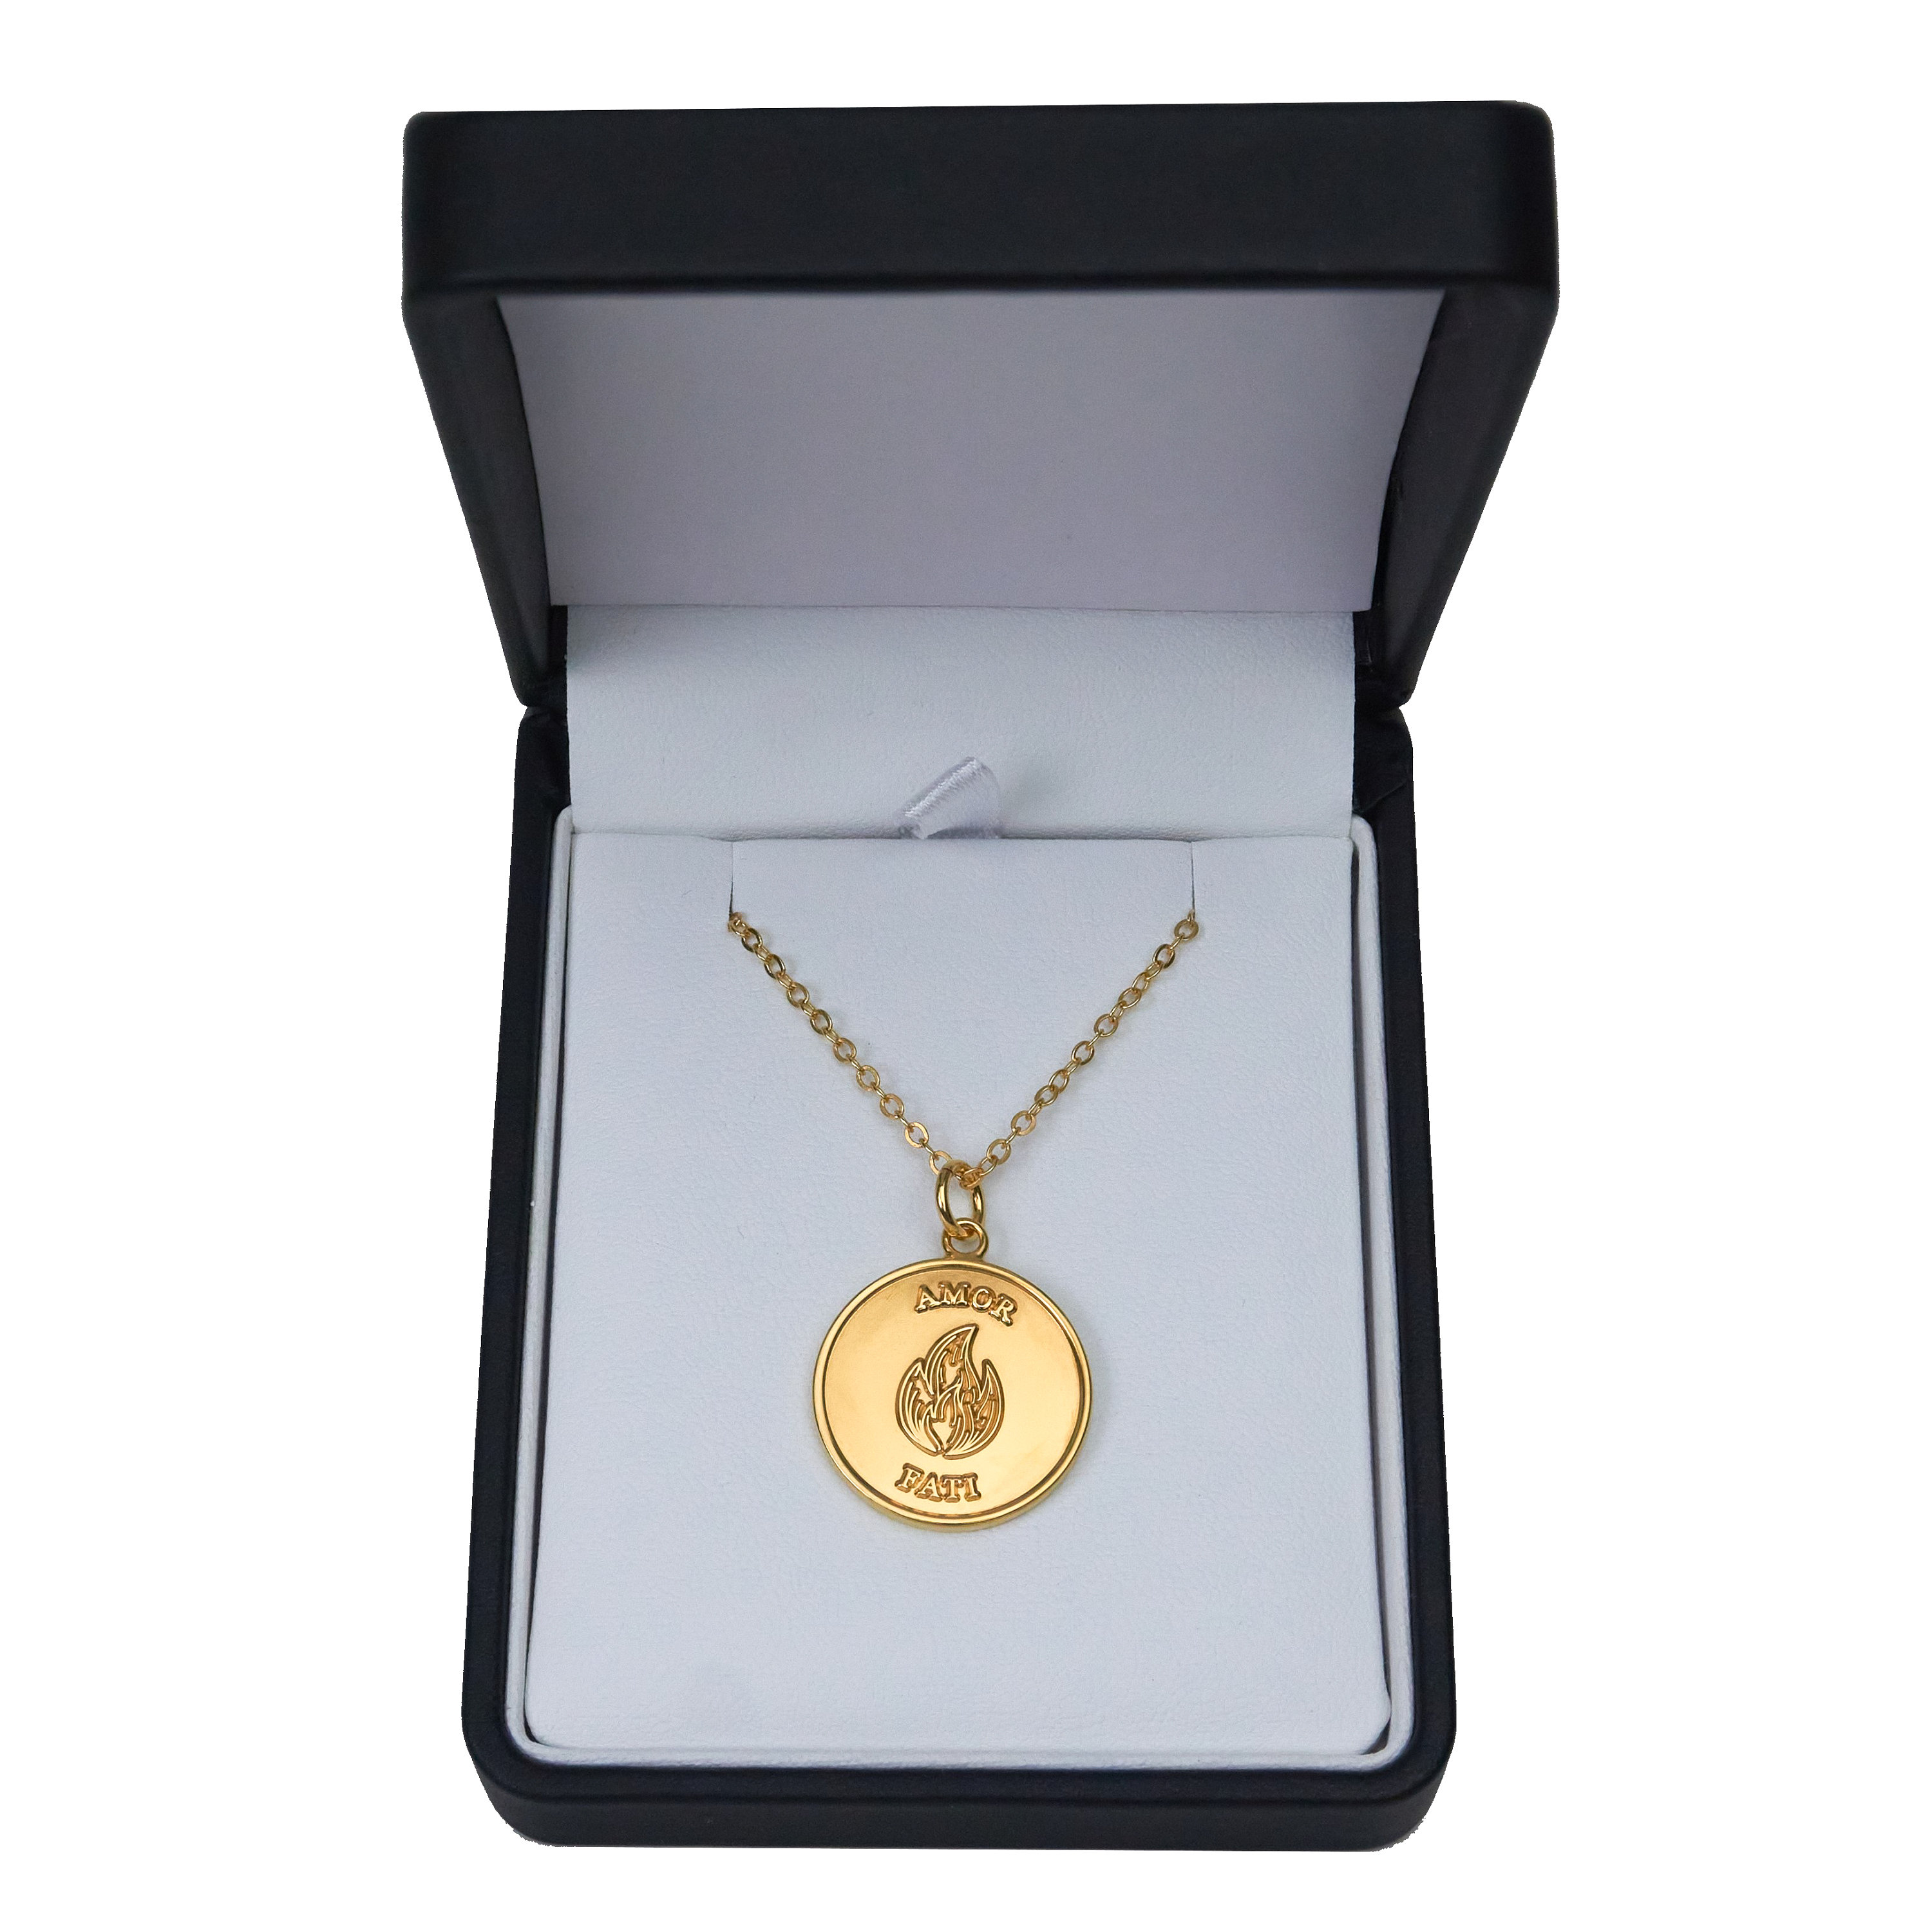 Amor Fati Gold Pendant Necklace Stoic Marcus Aurelius | Etsy